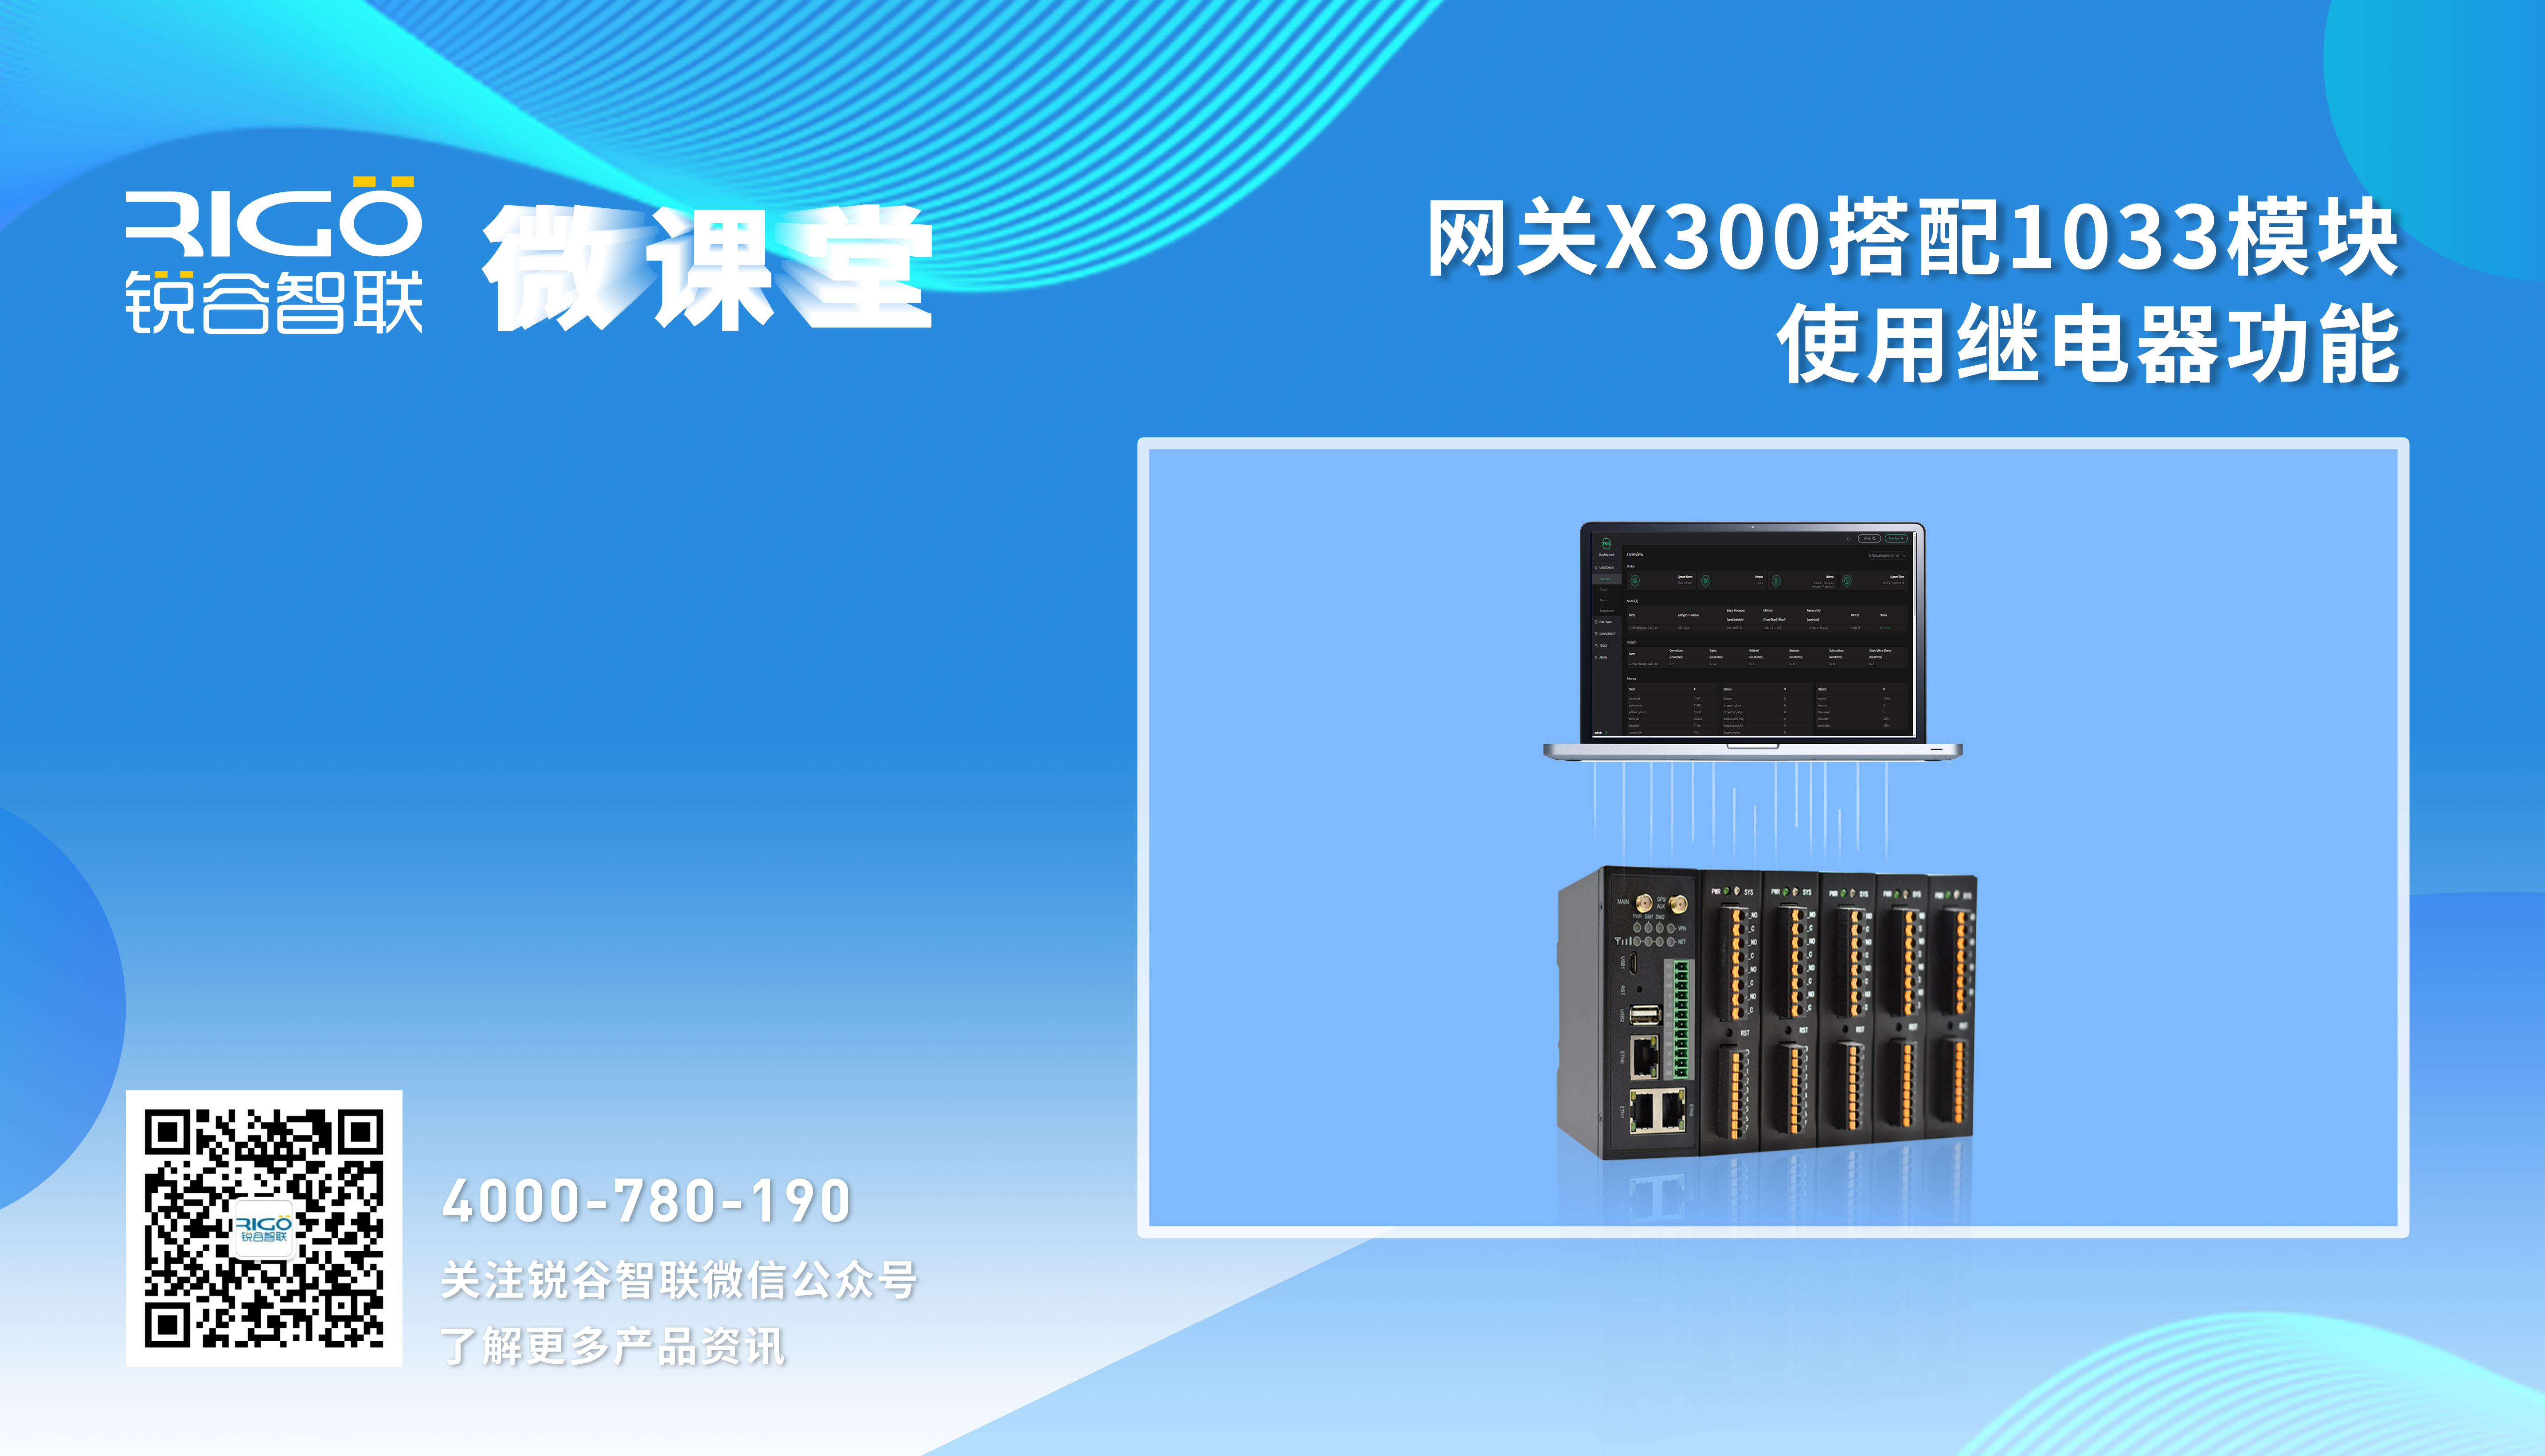 【数据采集】X300搭配1033使用DI功能